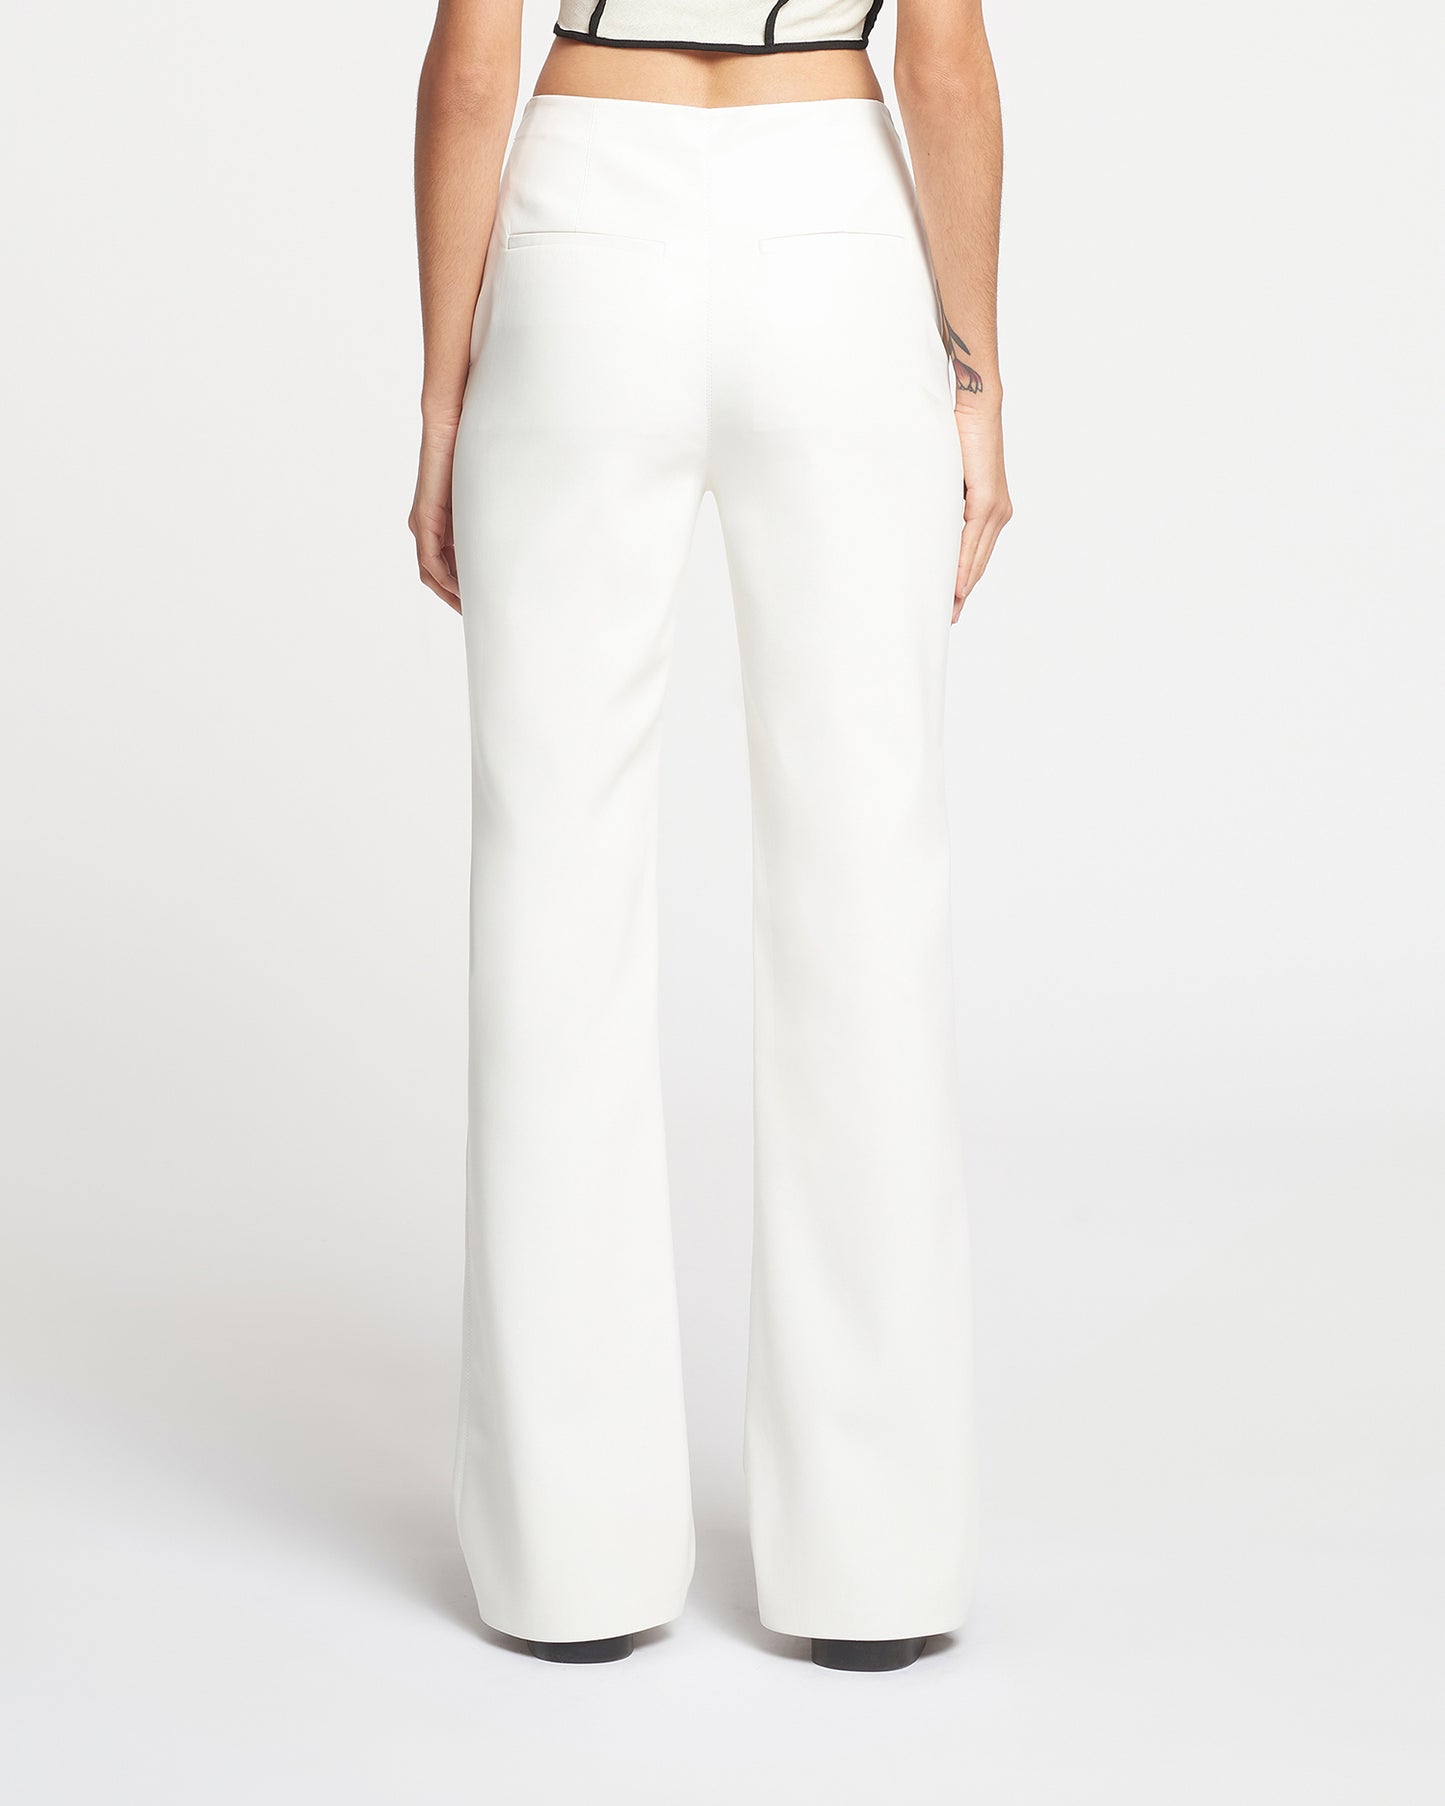 Manola - Okobor™ Alt-Leather Pants - White